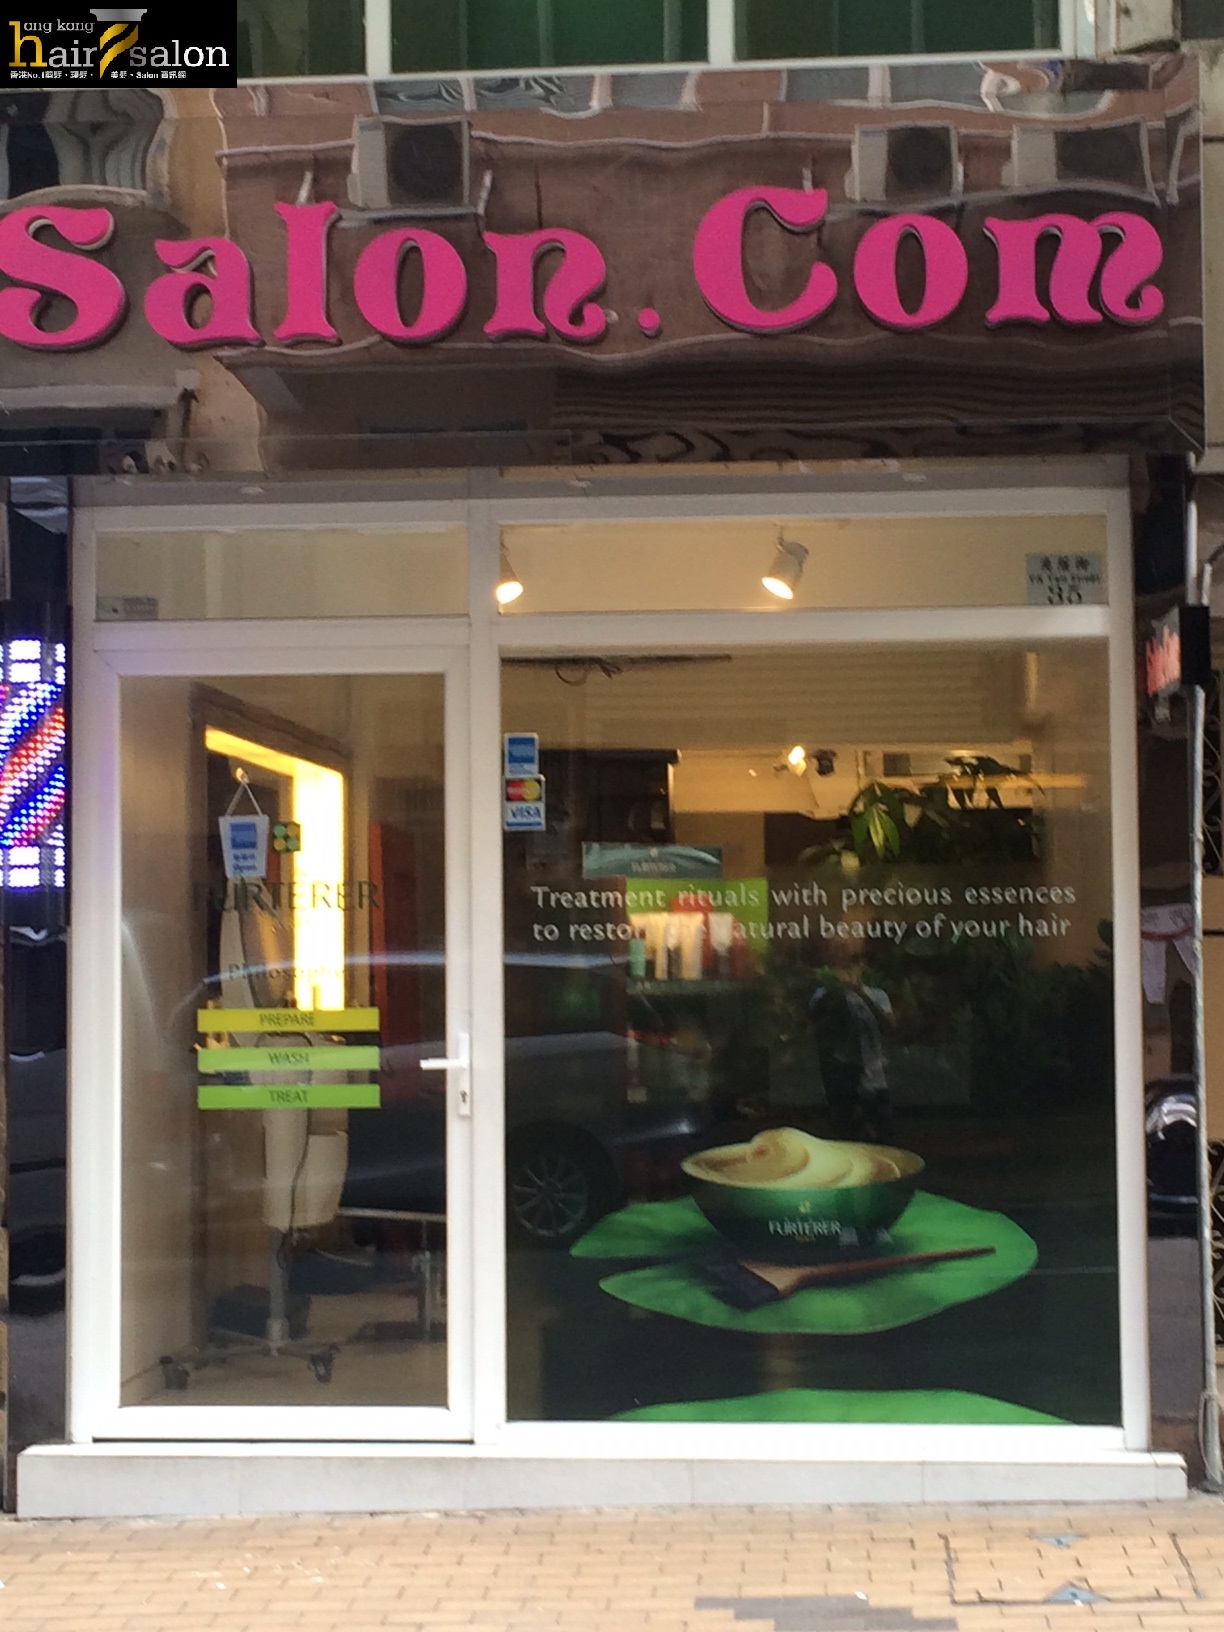 髮型屋: Salon dot Com